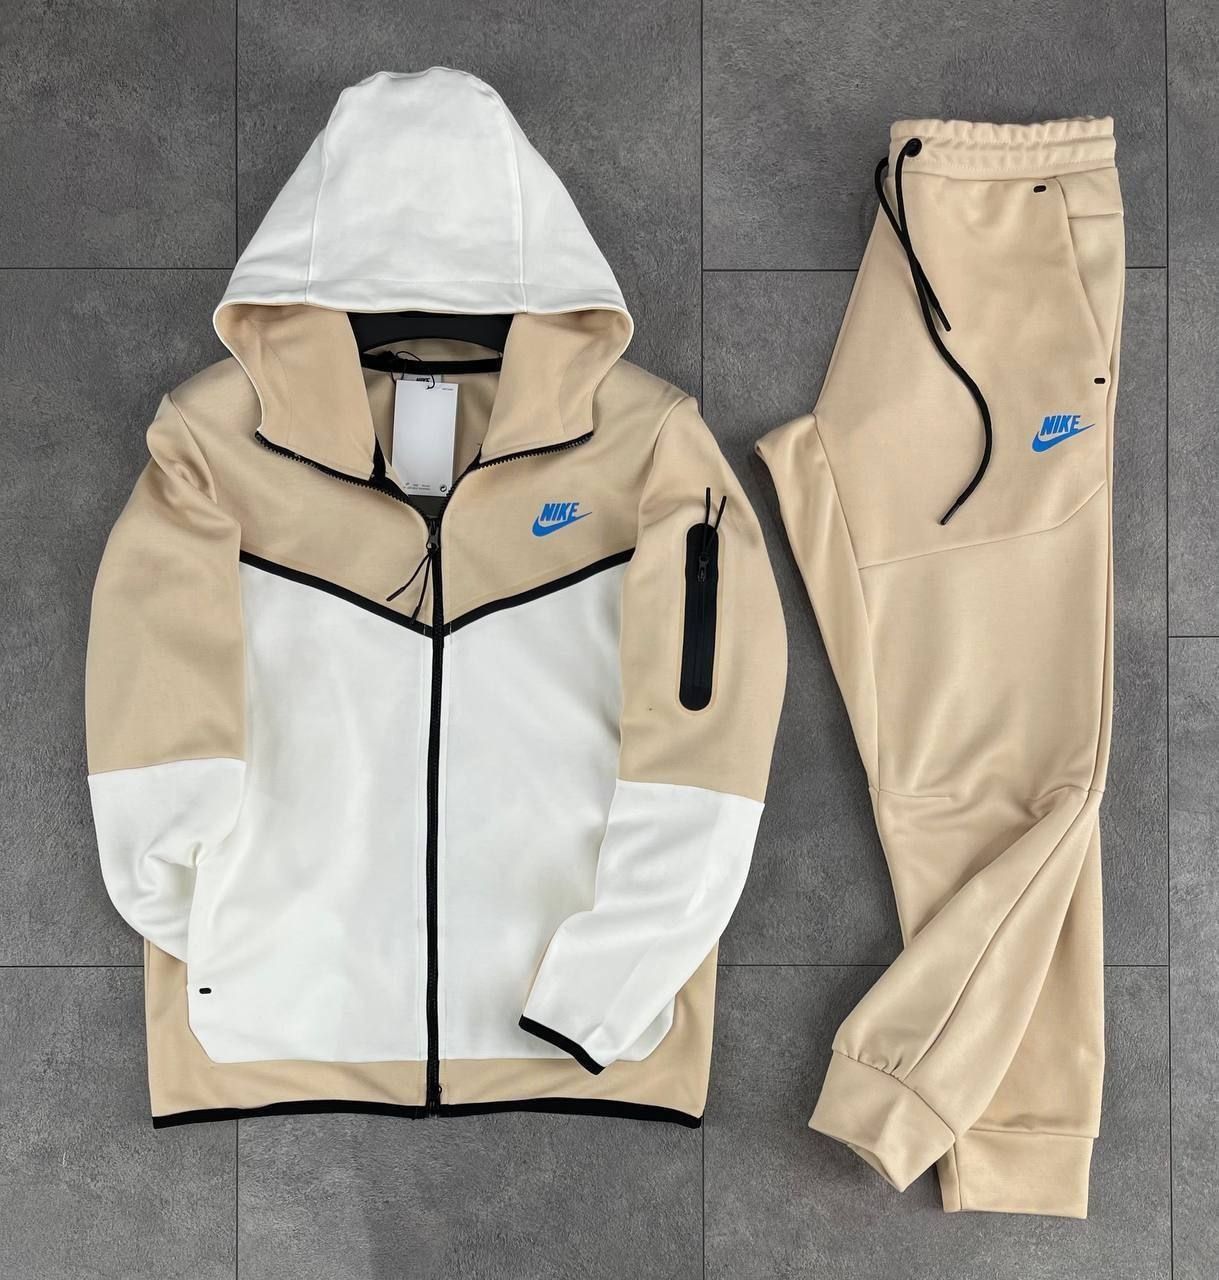 ТОП ЯКІСТЬ, Спортивний костюм Nike Tech fleece, чоловічий Найк теч